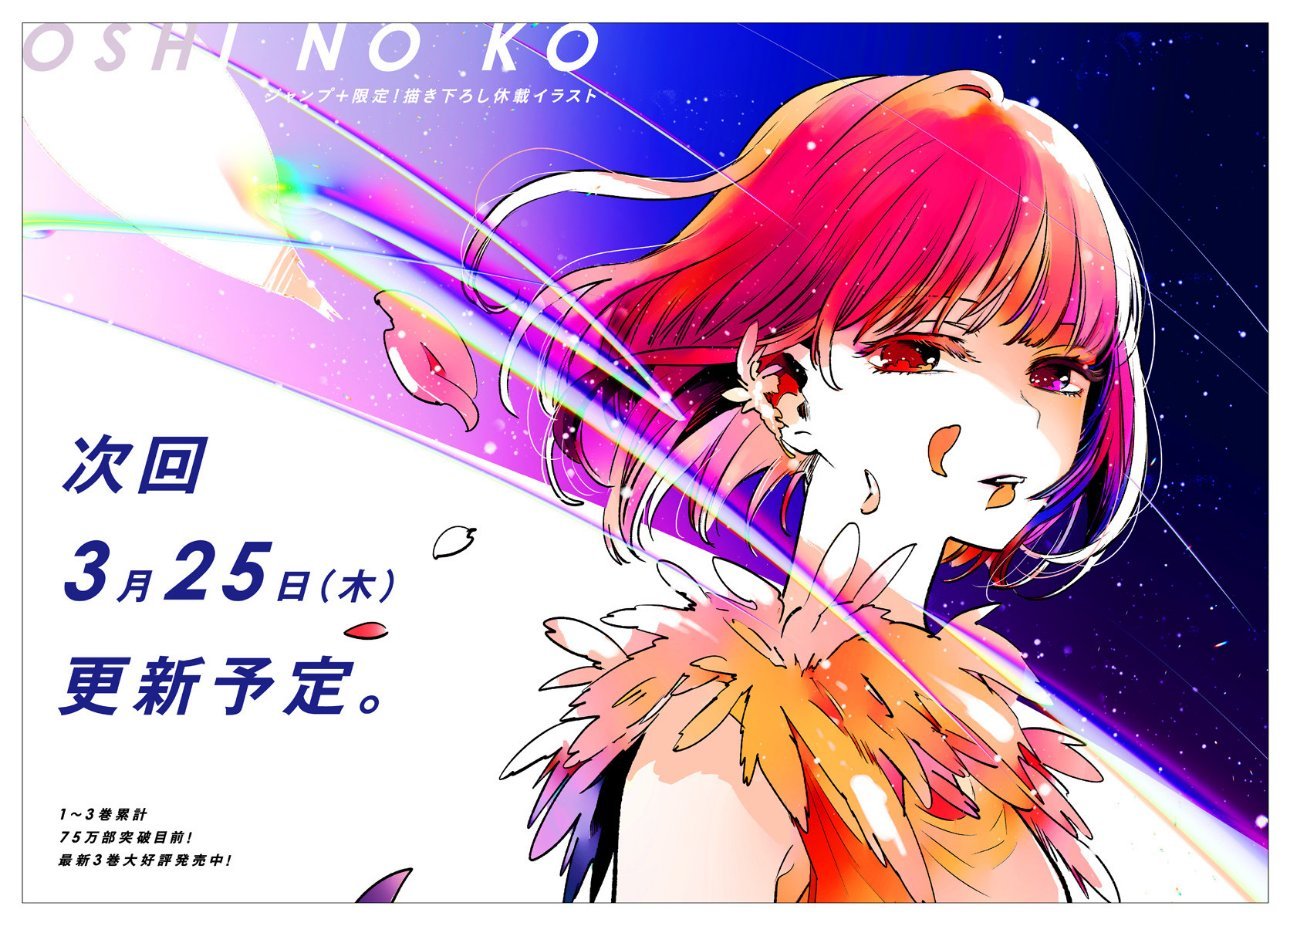 Oshi no Ko Info & News - Unofficial (@Oshinoko_info) / X